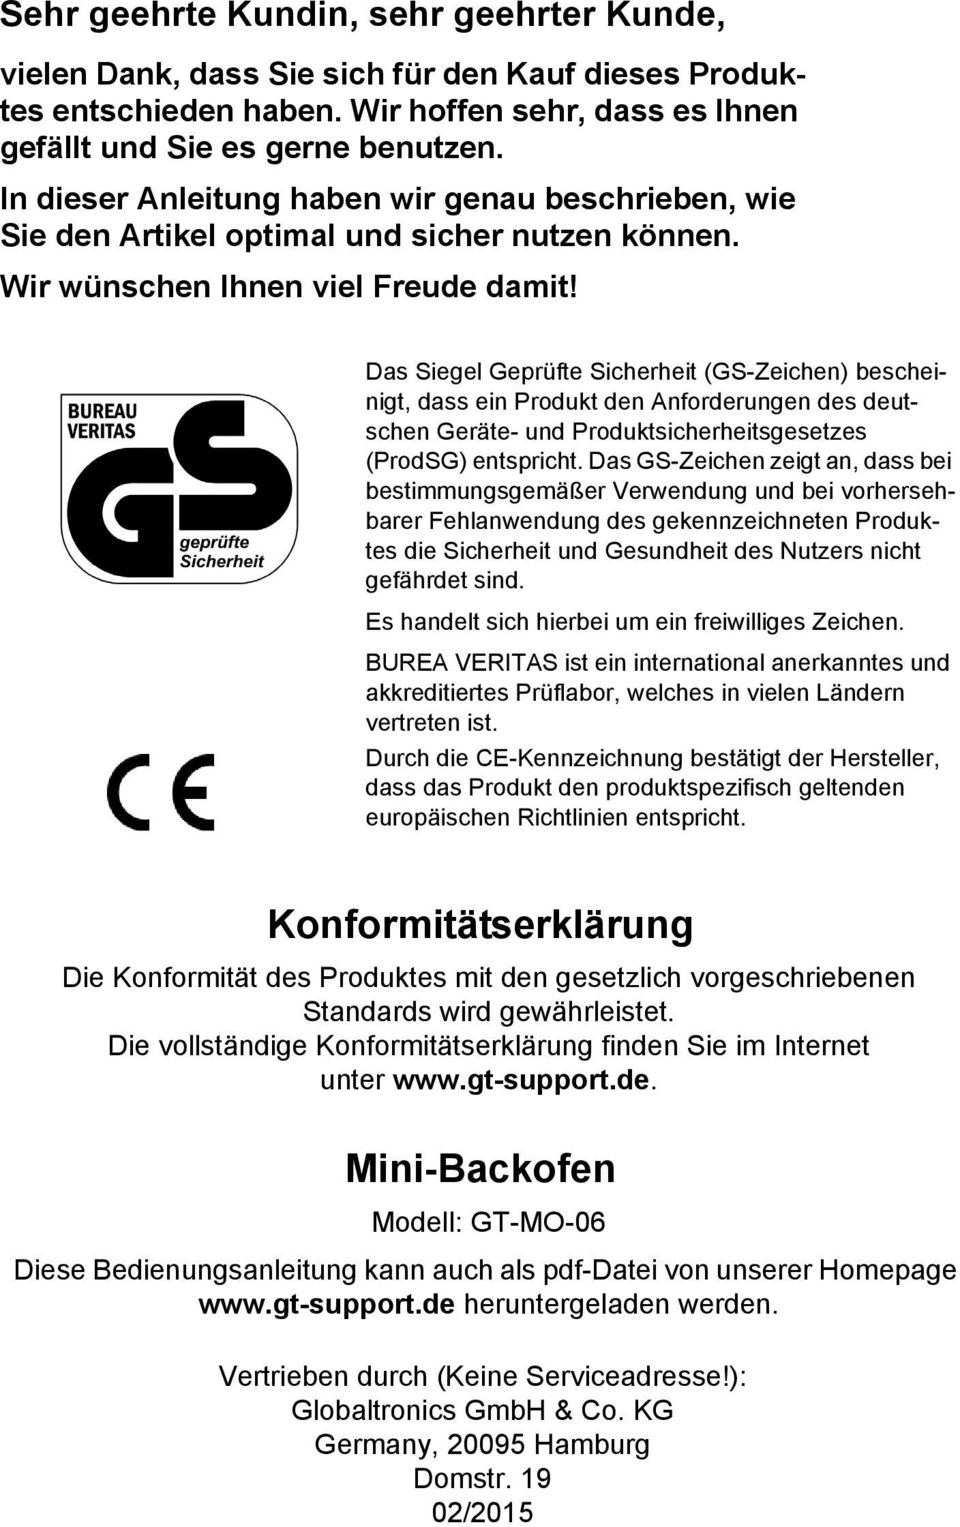 Das Siegel Geprüfte Sicherheit (GS-Zeichen) bescheinigt, dass ein Produkt den Anforderungen des deutschen Geräte- und Produktsicherheitsgesetzes (ProdSG) entspricht.